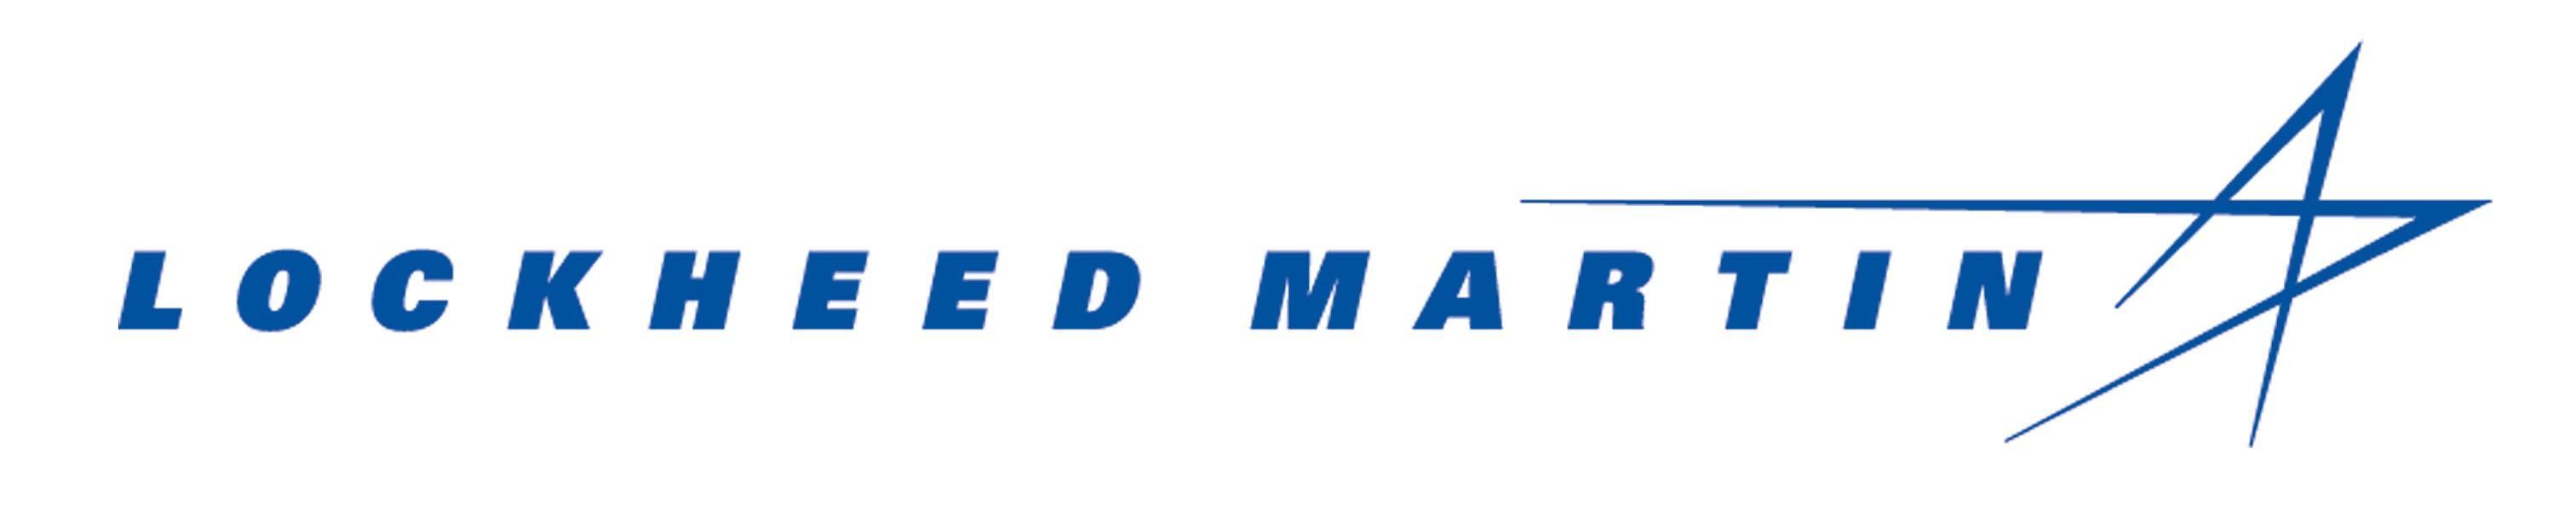 Lockheed Martin Star Logo - Lockheed Martin 2017 18 JA Bowl A Thon